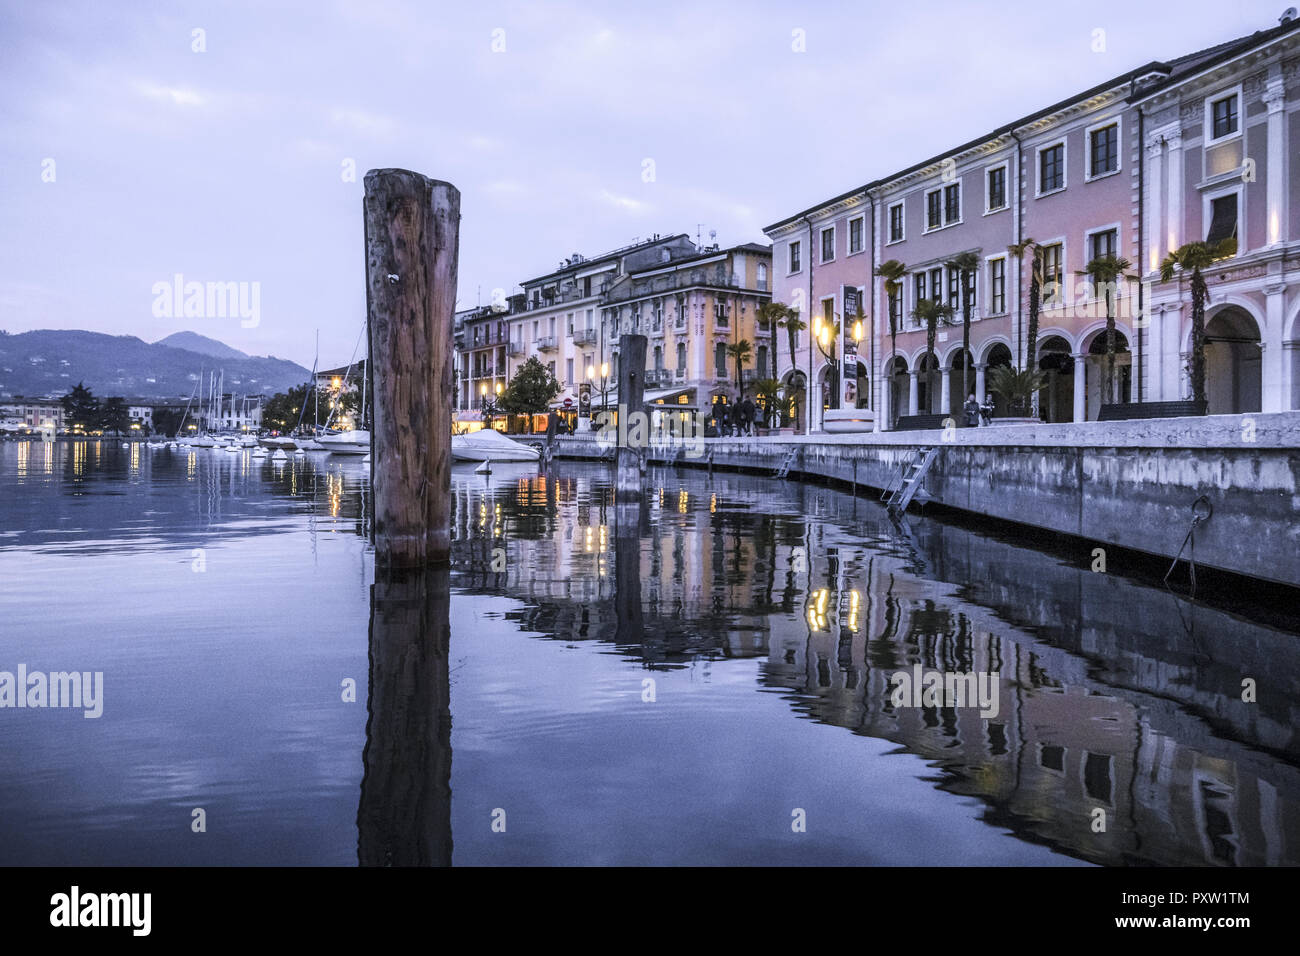 Passeggiata lungolago in Salo sul Lago di Garda, Italia Foto Stock